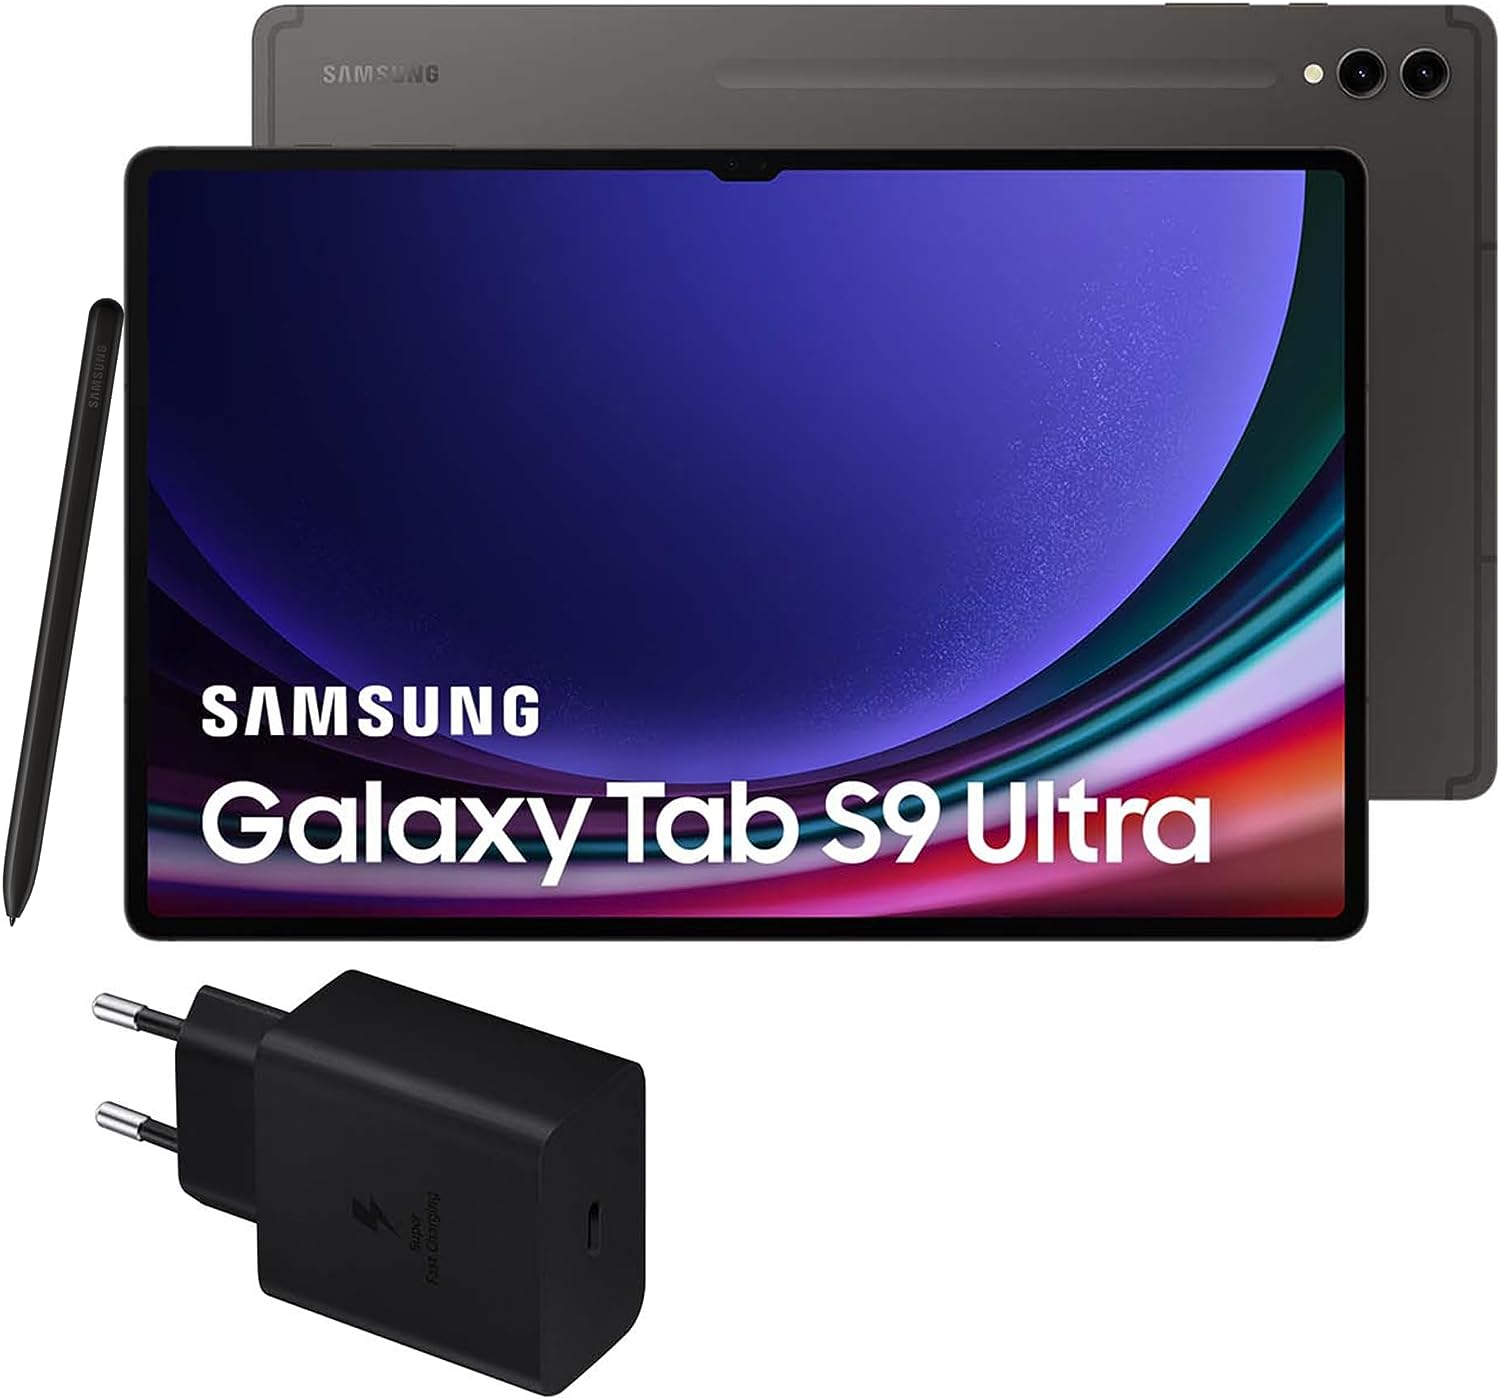 Samsung Galaxy Tab S9+ vs Samsung Galaxy Tab S9 Ultra